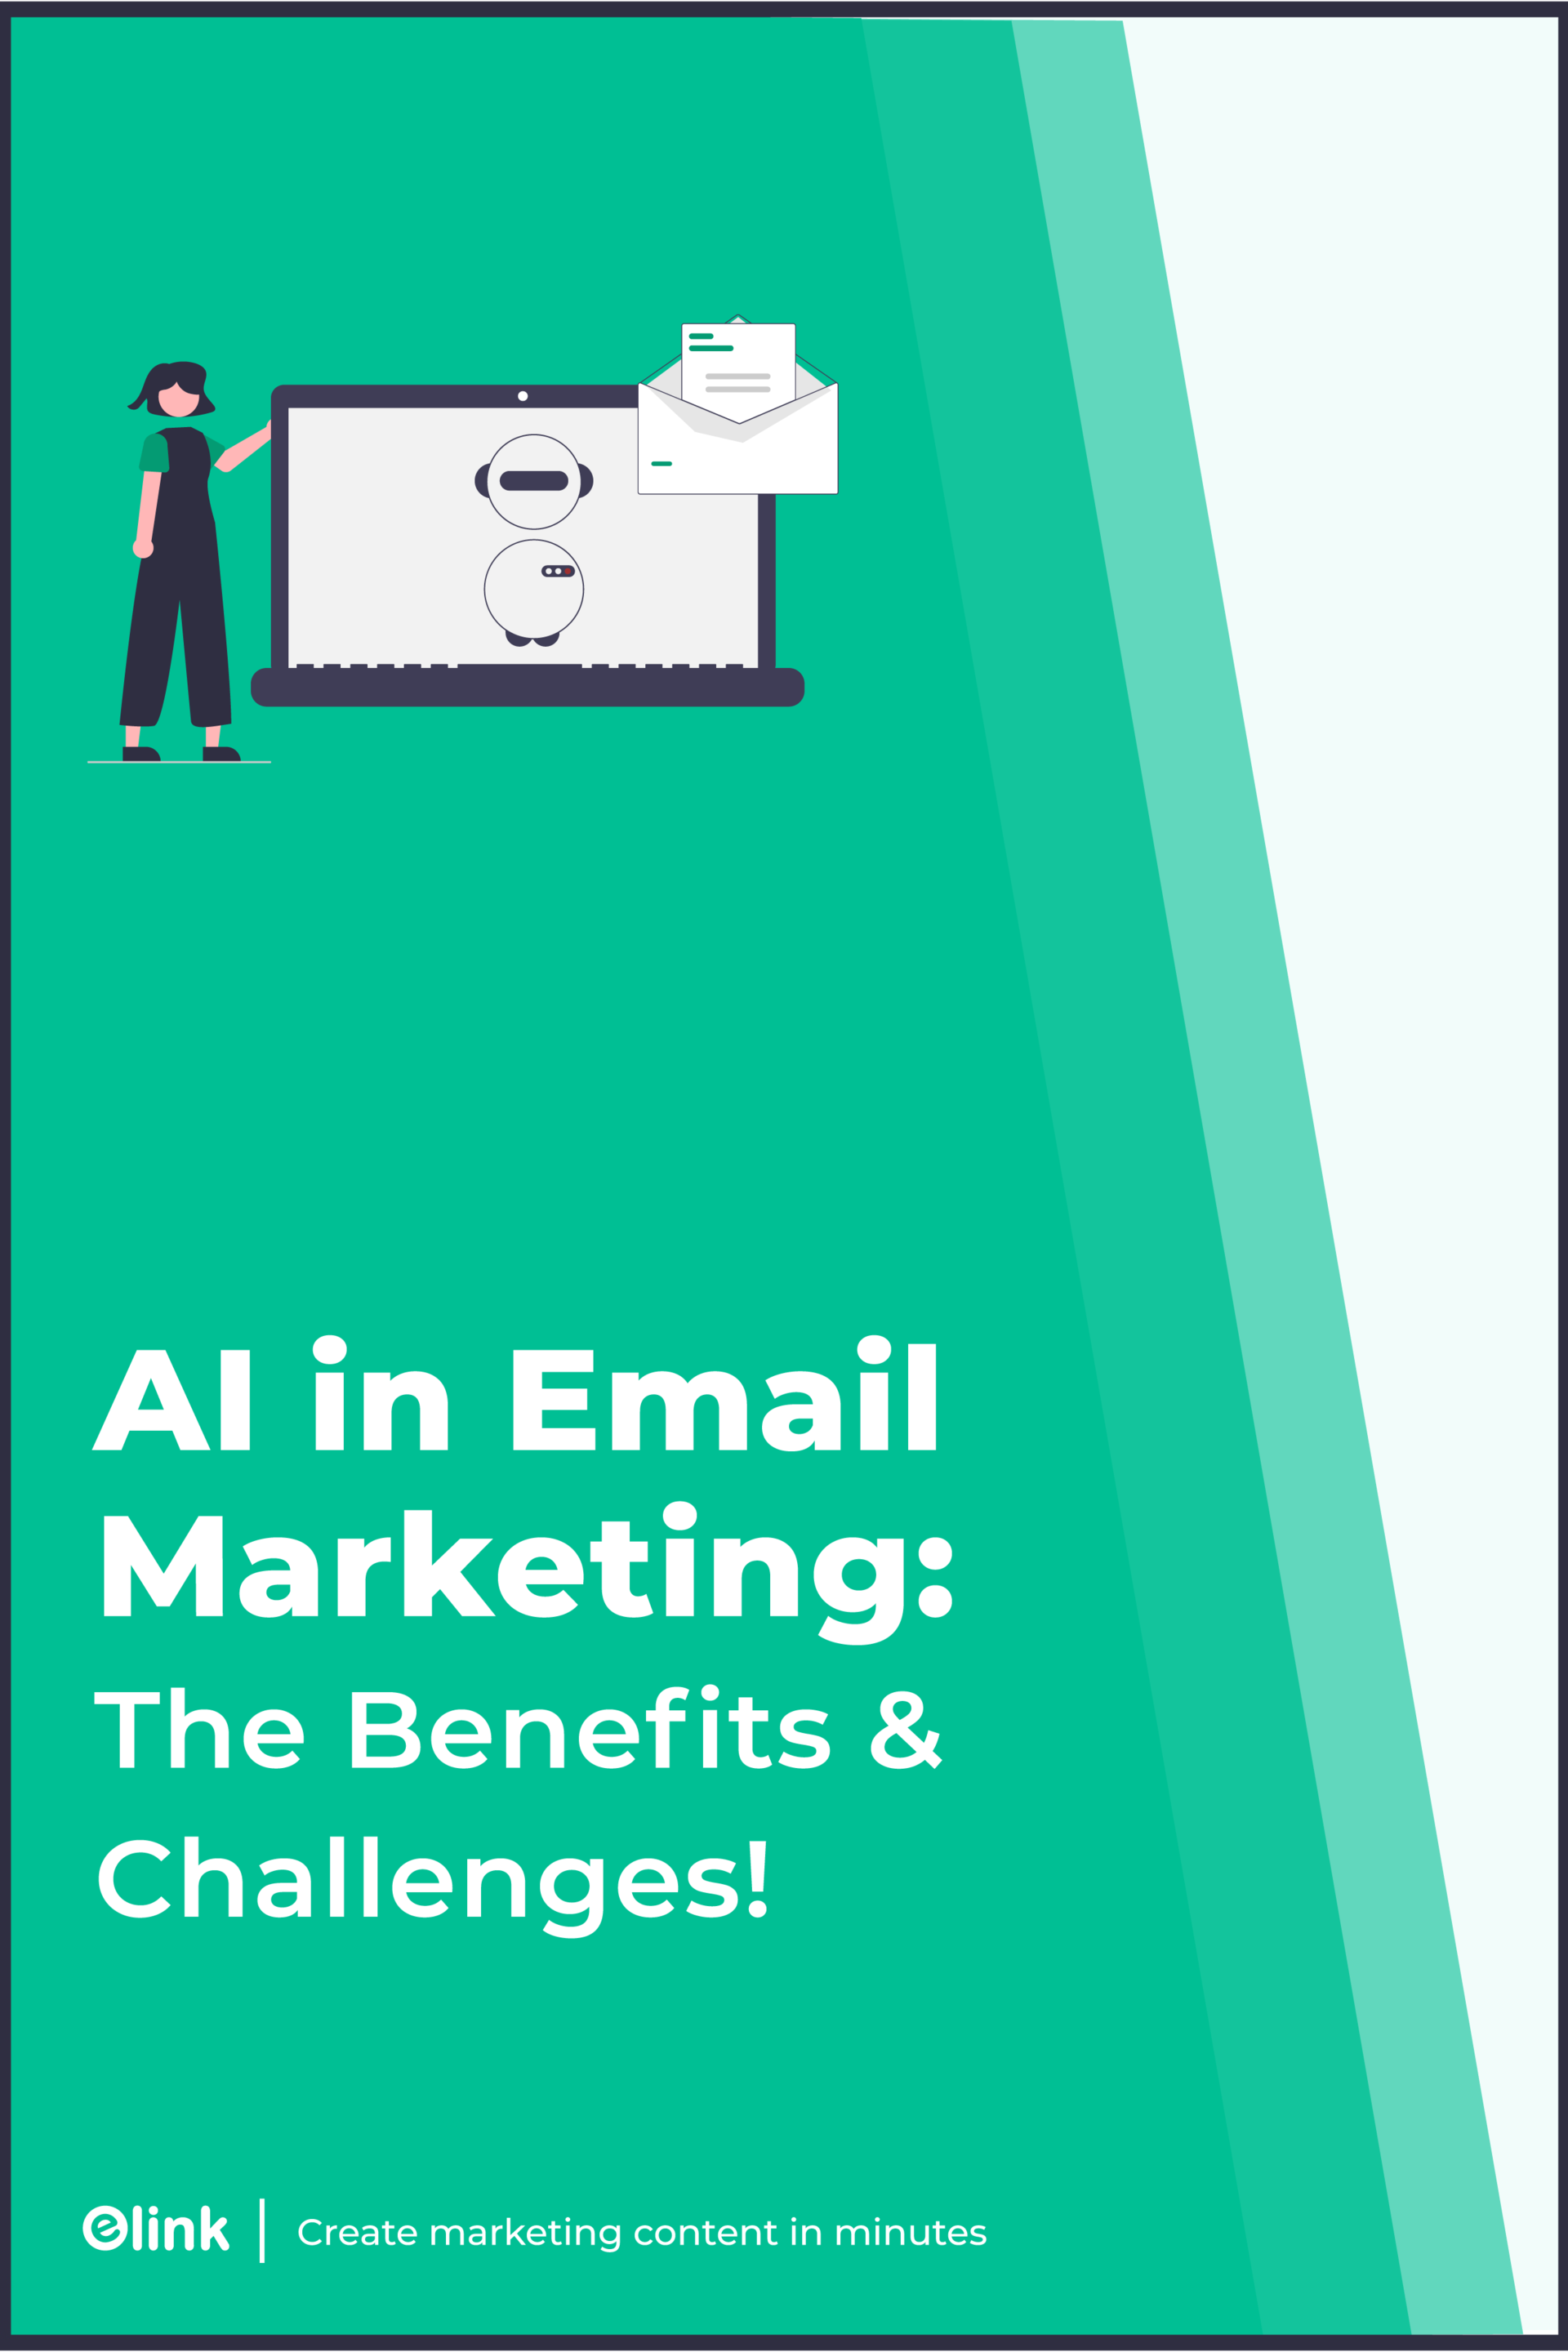 Sztuczna inteligencja w banerze pinterest marketingu e-mailowego